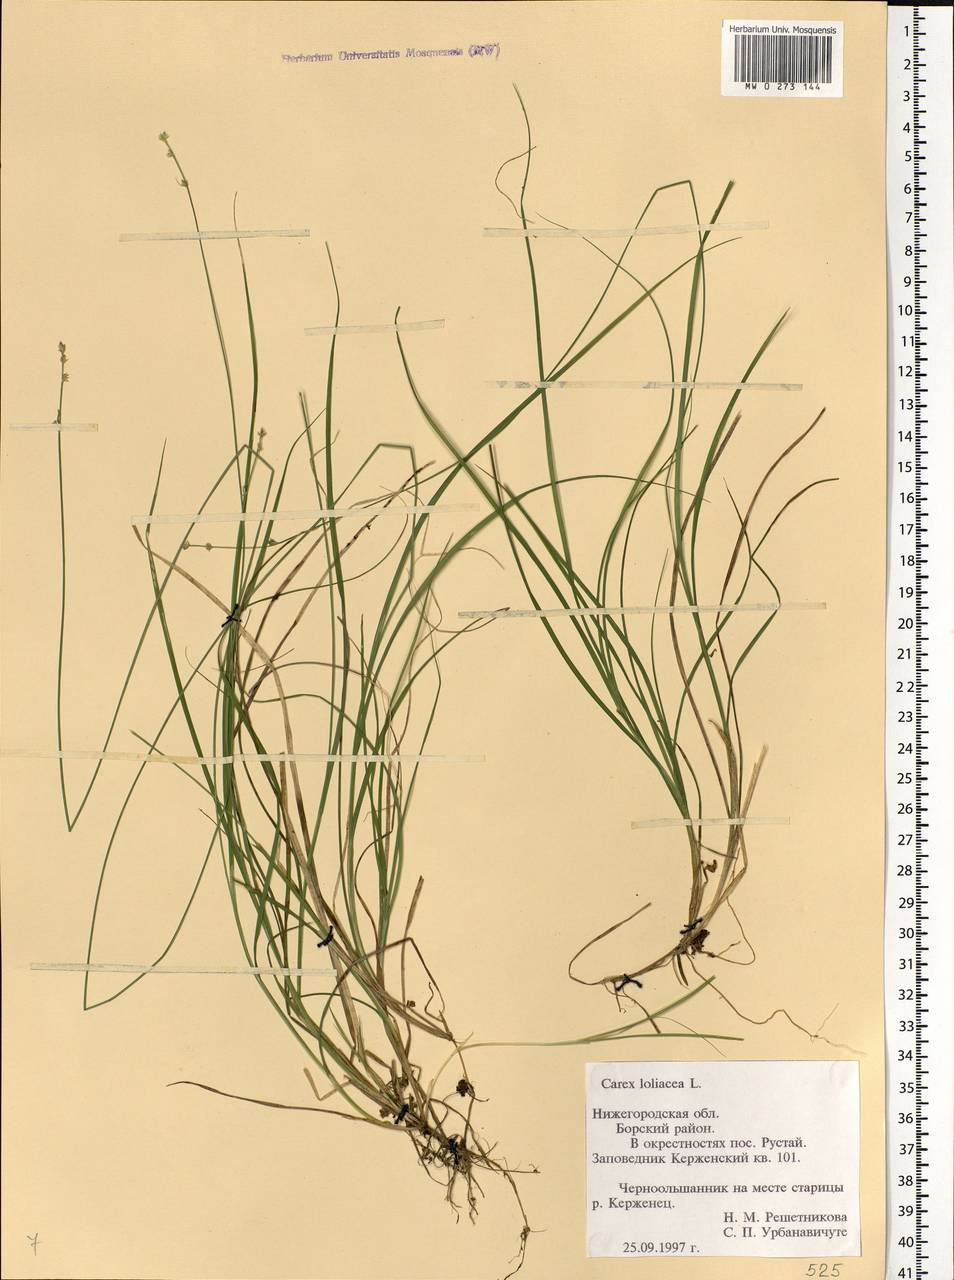 Carex loliacea L., Eastern Europe, Volga-Kama region (E7) (Russia)